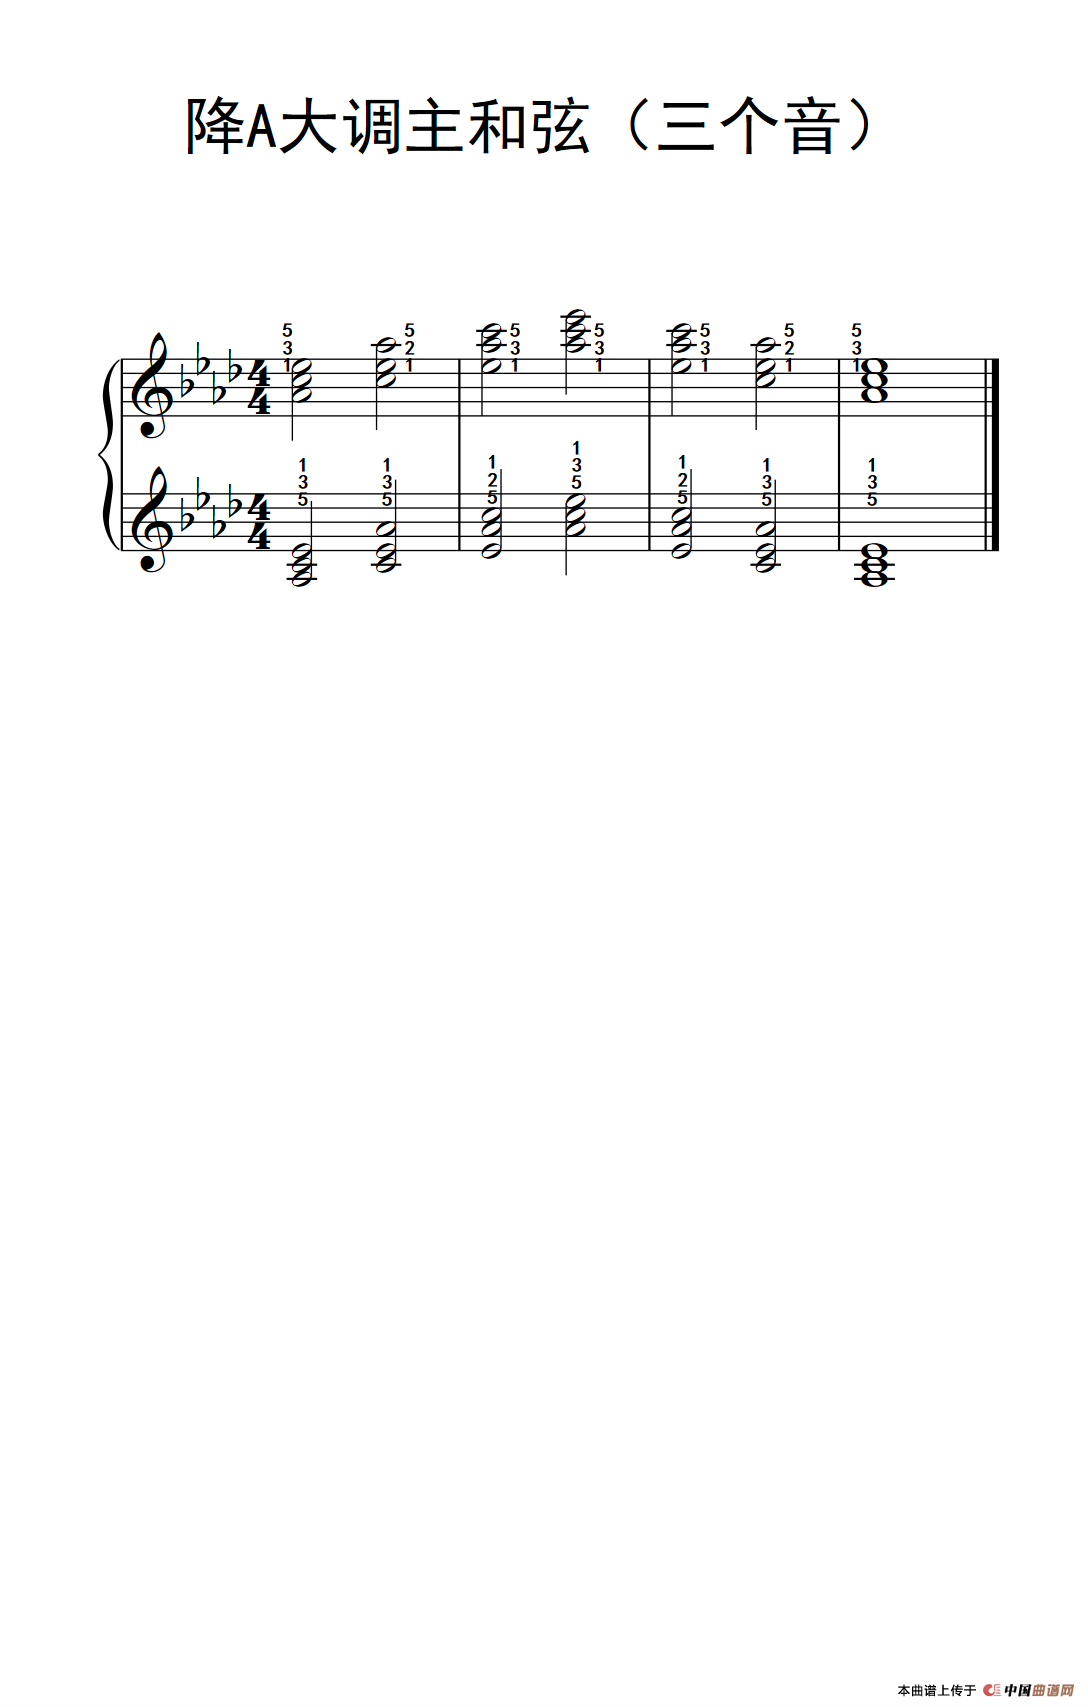 钢琴简谱音阶_身体音阶歌钢琴简谱(2)